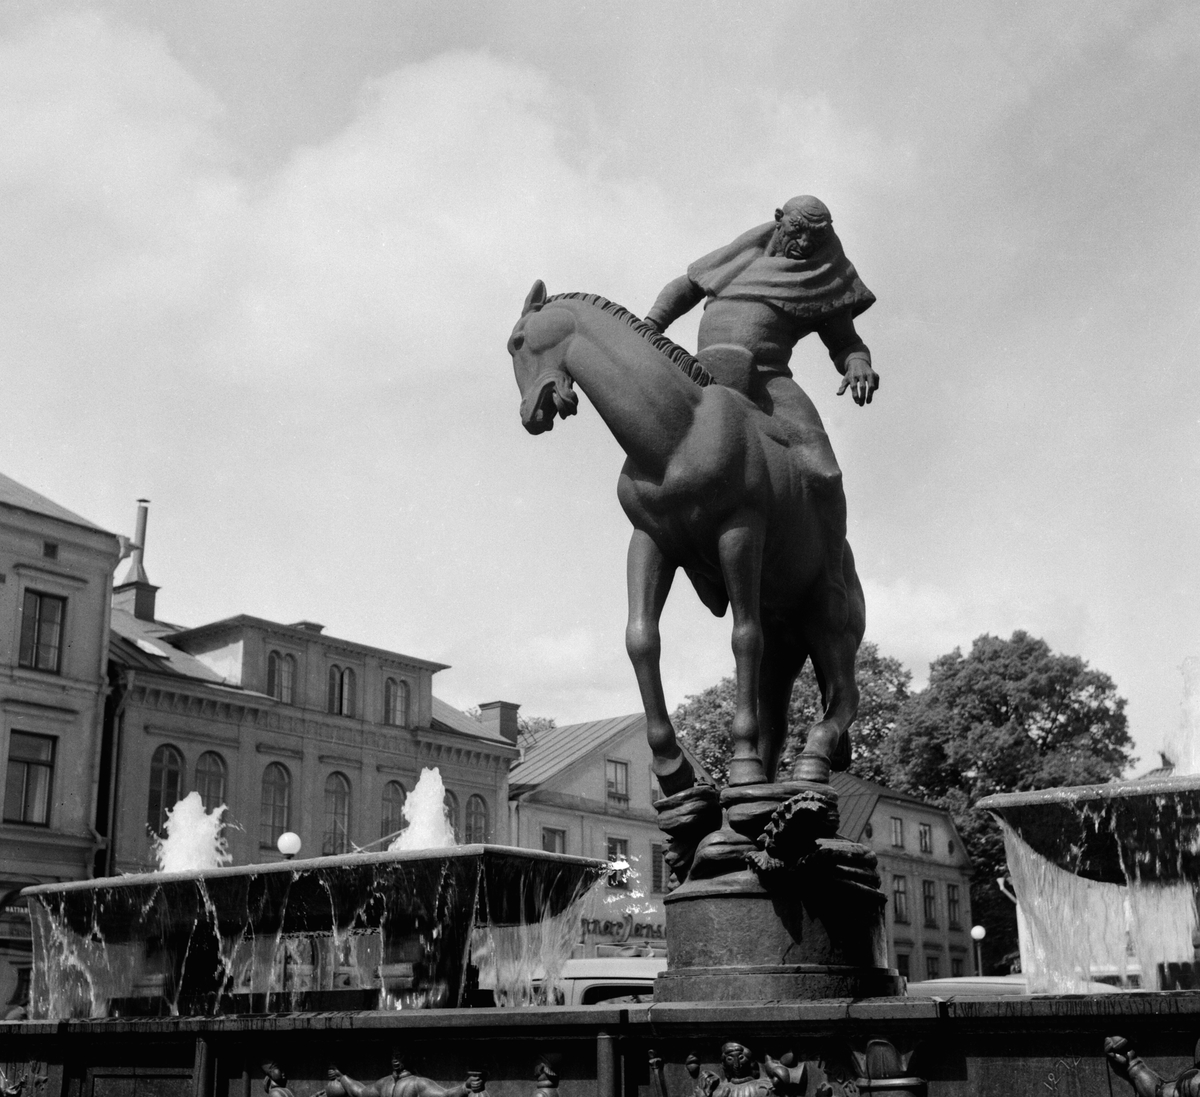 Från sin ystra häst har Folke Filbyter blickat ned på passerande allt sedan monumentet invigdes 1927. Denna försommardag 1953 var inget undantag.